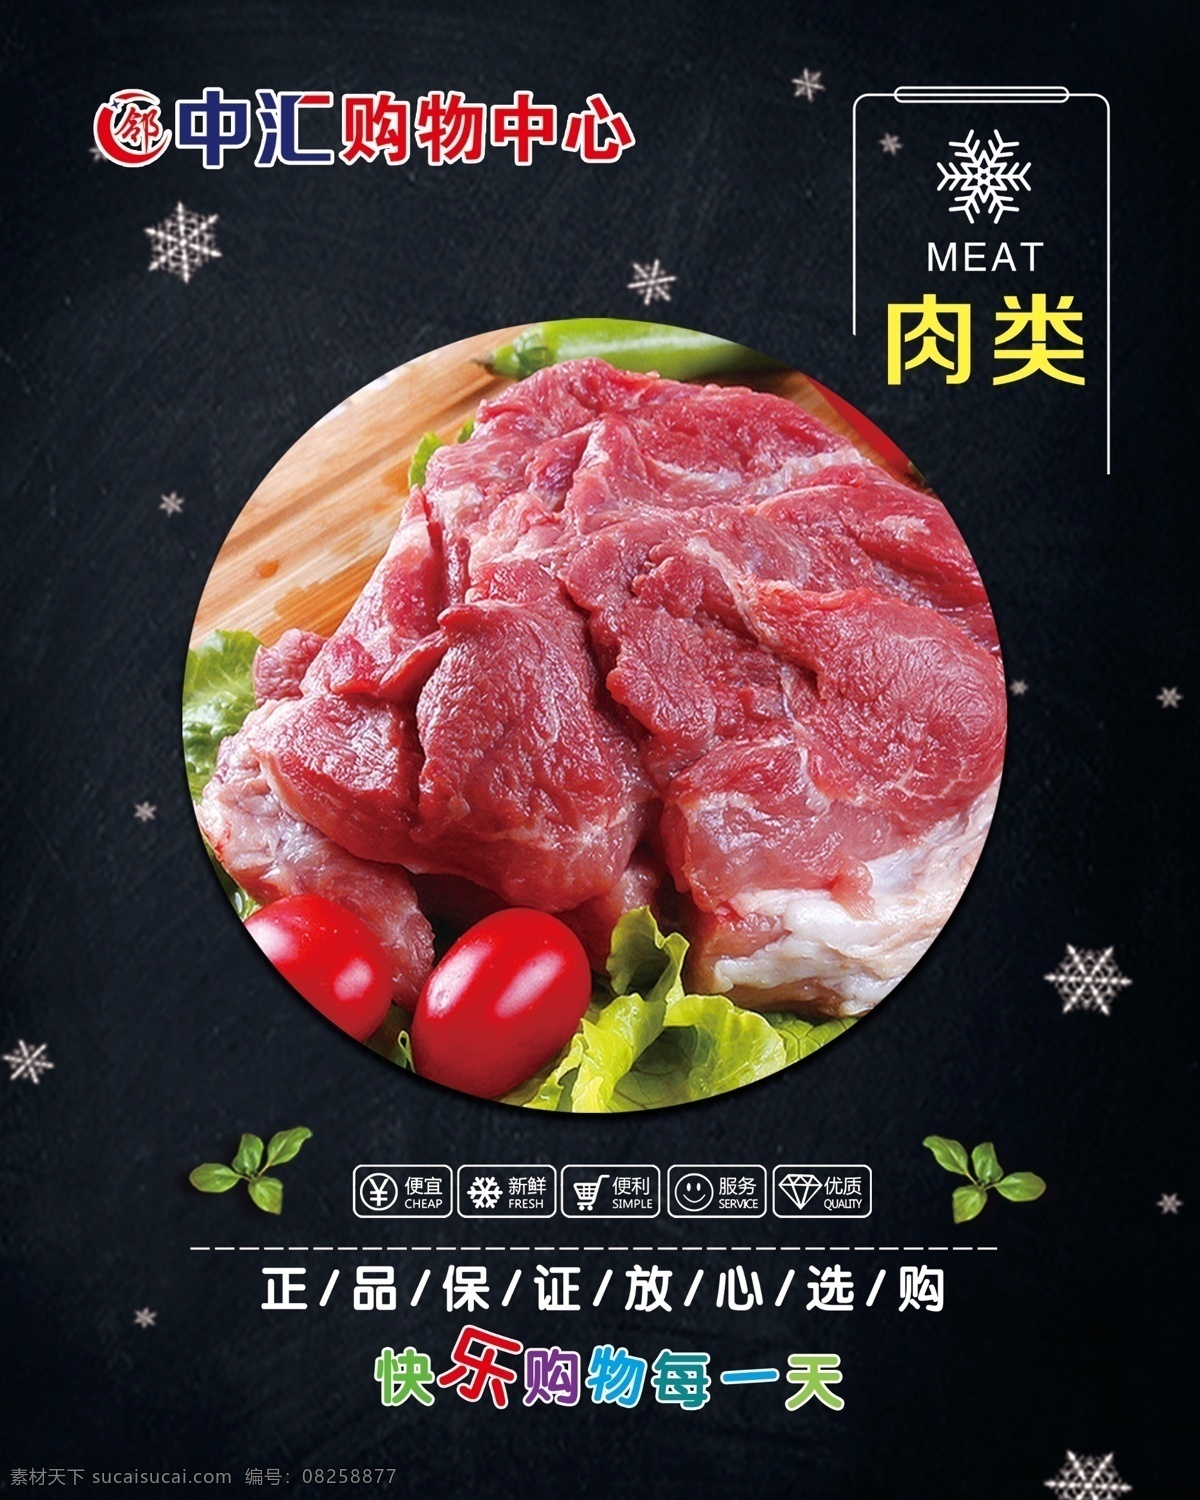 肉类 超市 广告 超市广告 肉品 海报